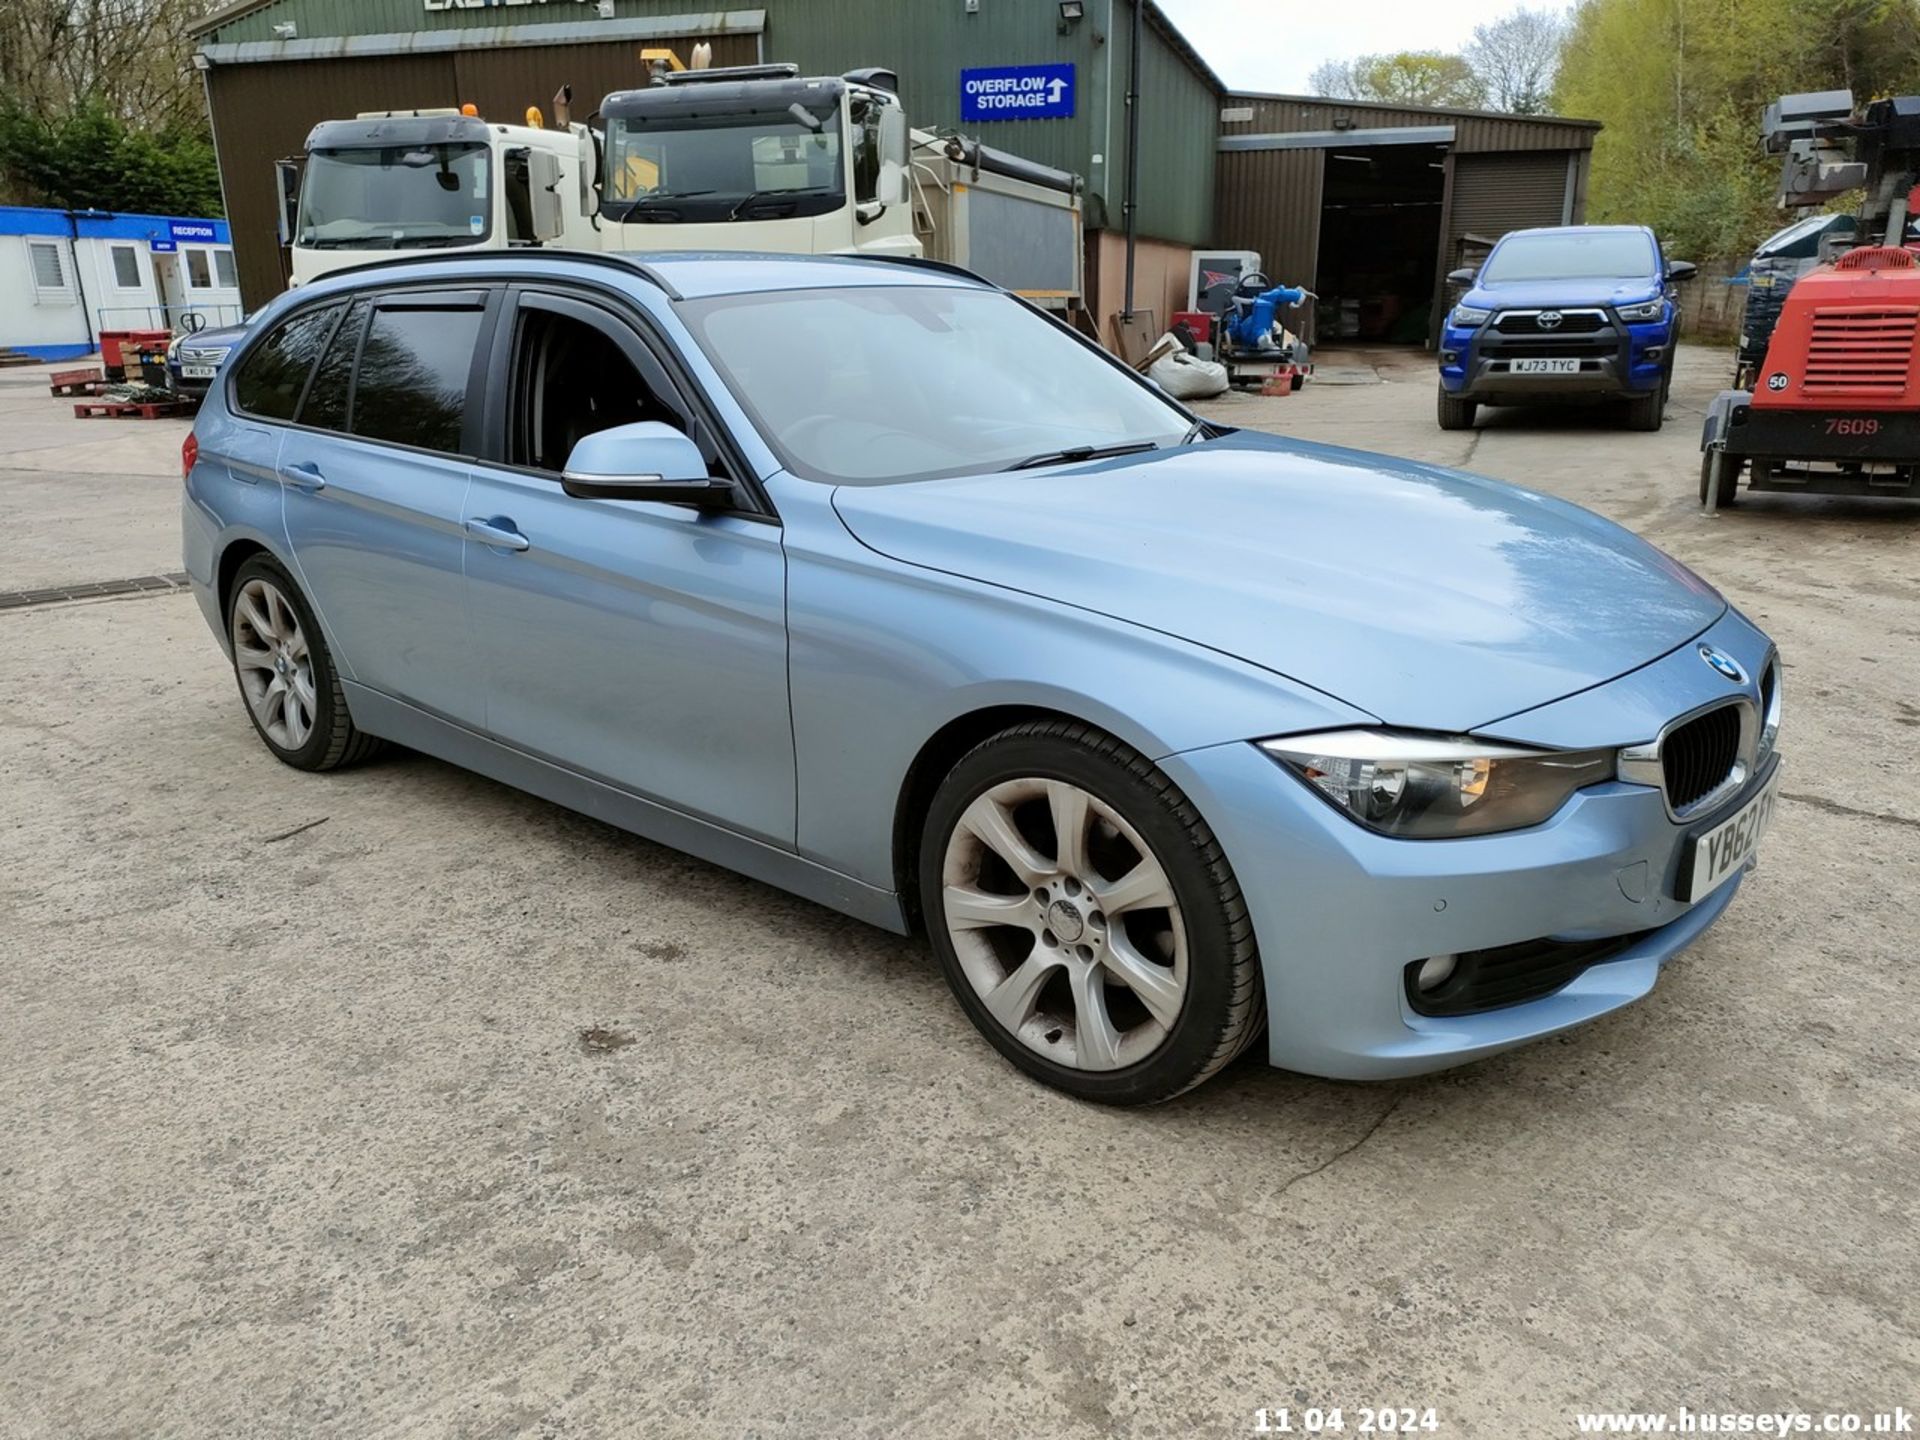 12/62 BMW 320D SE TOURING - 1995cc 5dr Estate (Blue, 174k) - Image 2 of 70